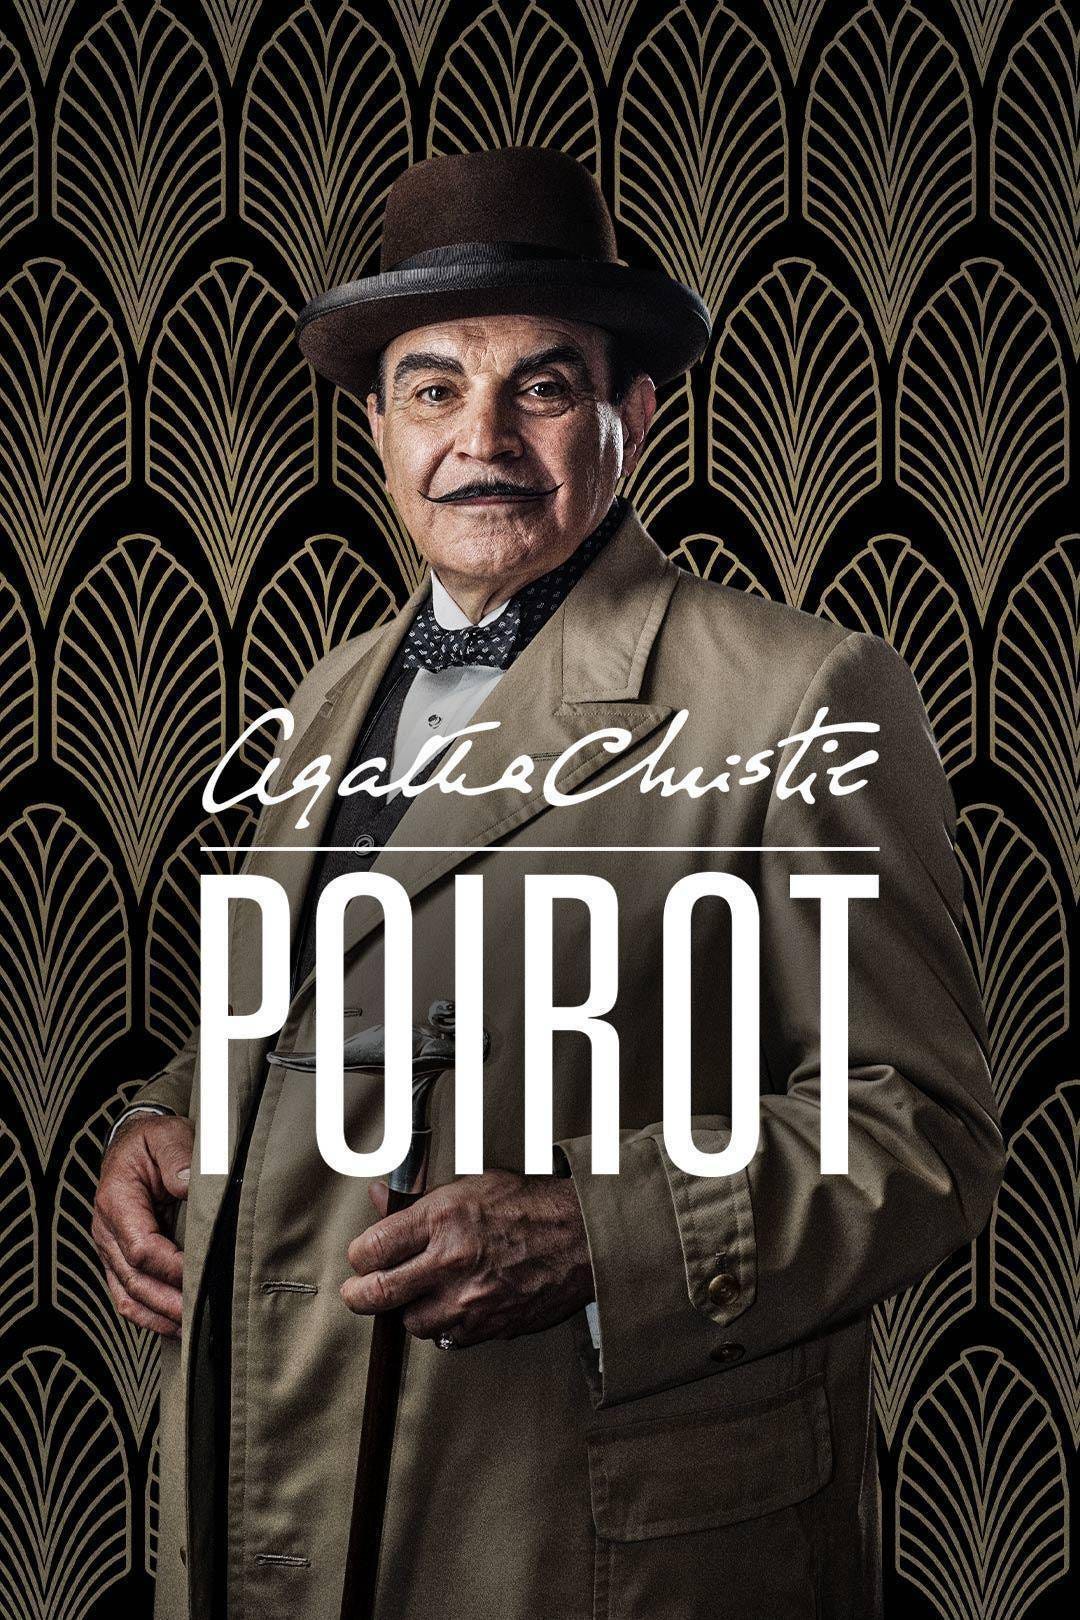 Poirot (TV Series 1989–2013) - IMDb